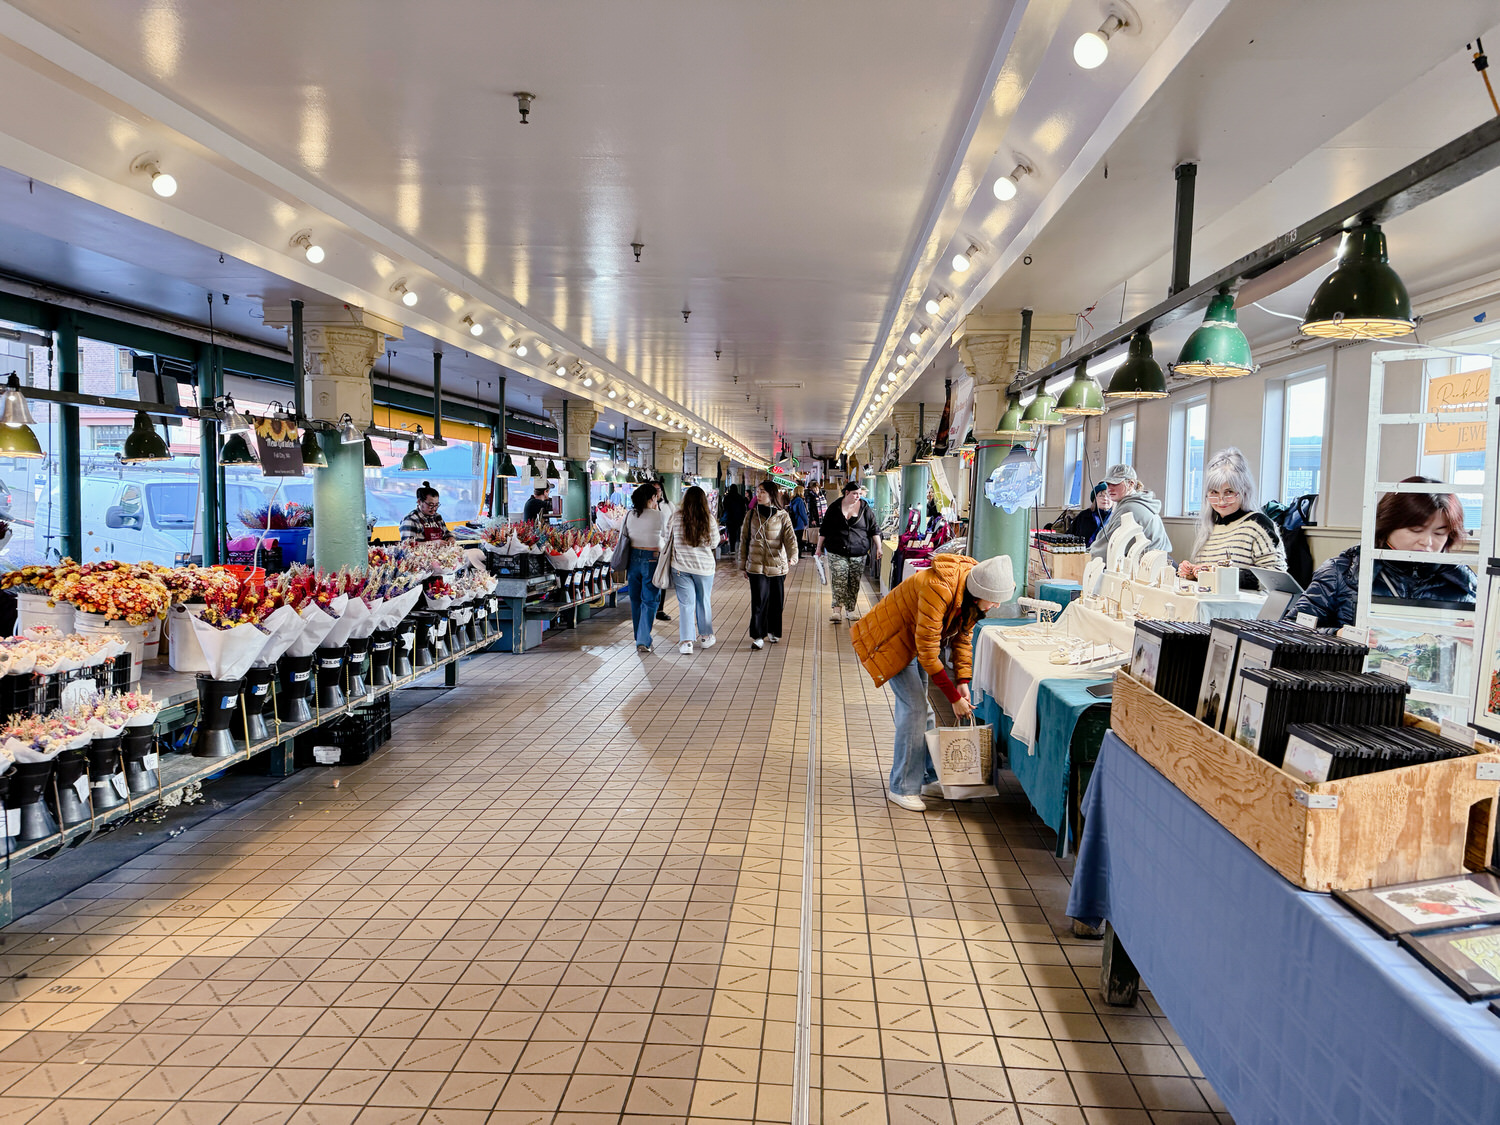 西雅圖自由行懶人包
派克市場 Pike Place Market